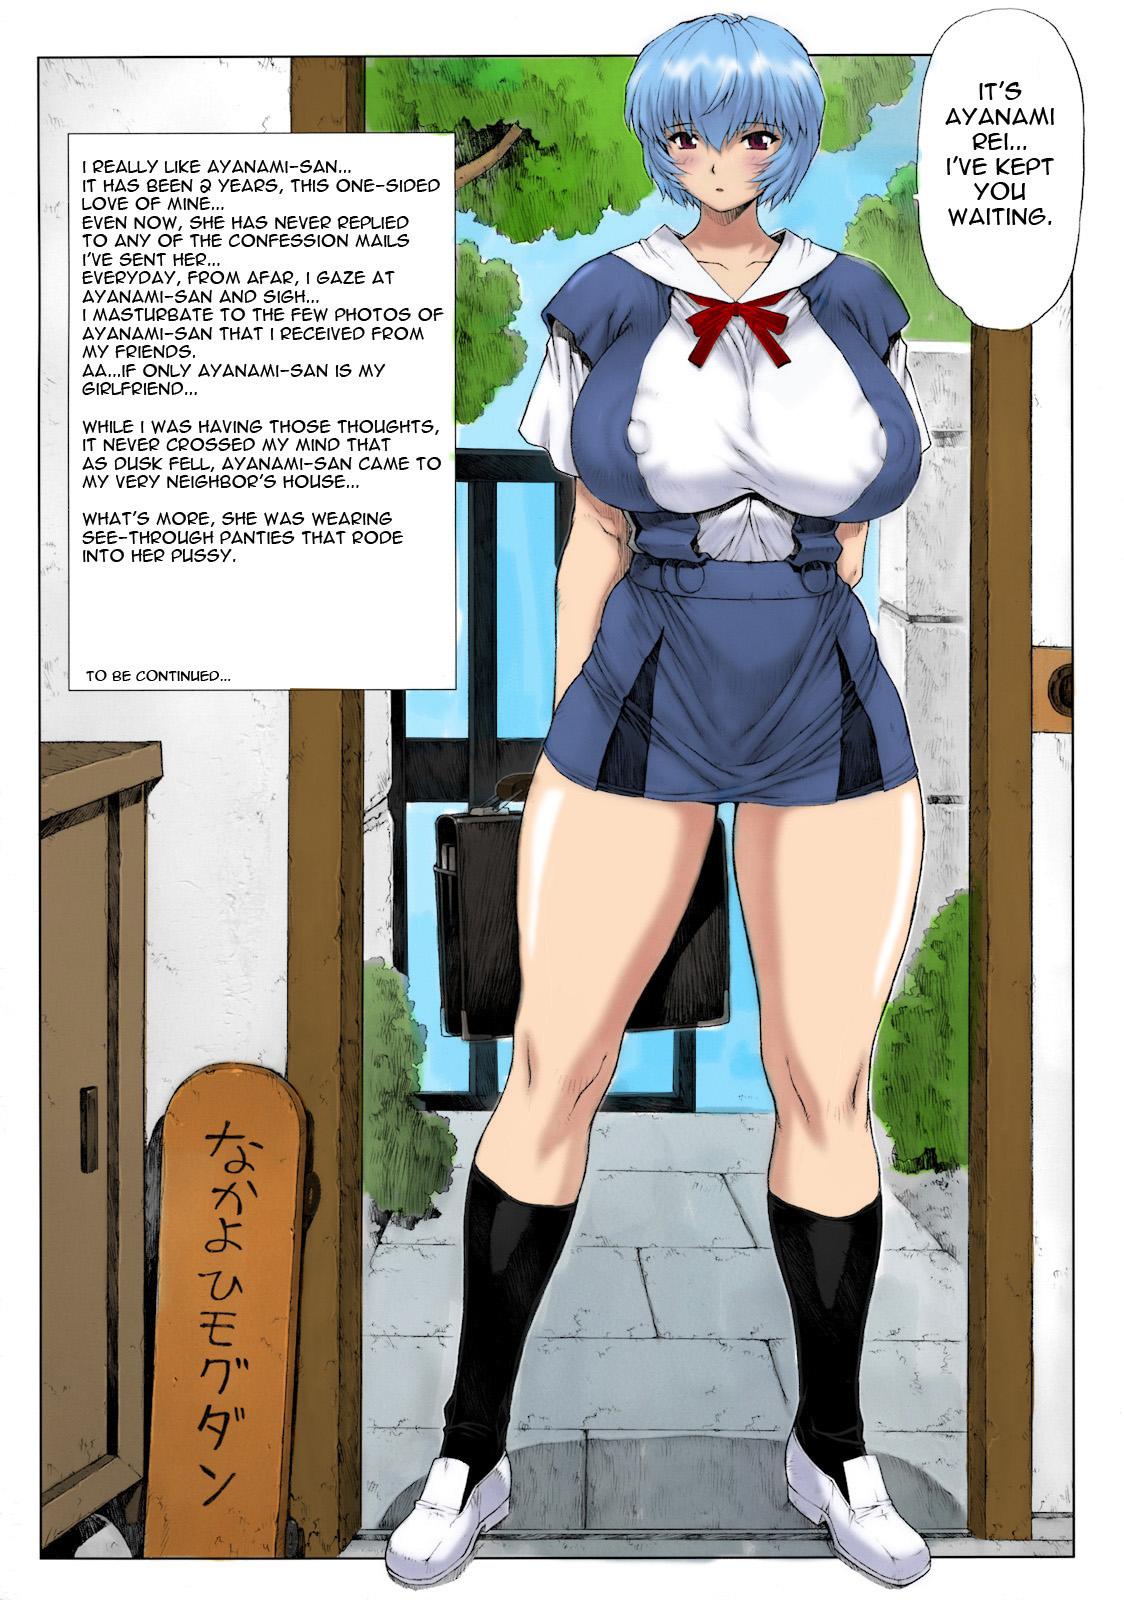 Butt Sex Ayanami Dai 2 Kai - Neon genesis evangelion Stunning - Page 2